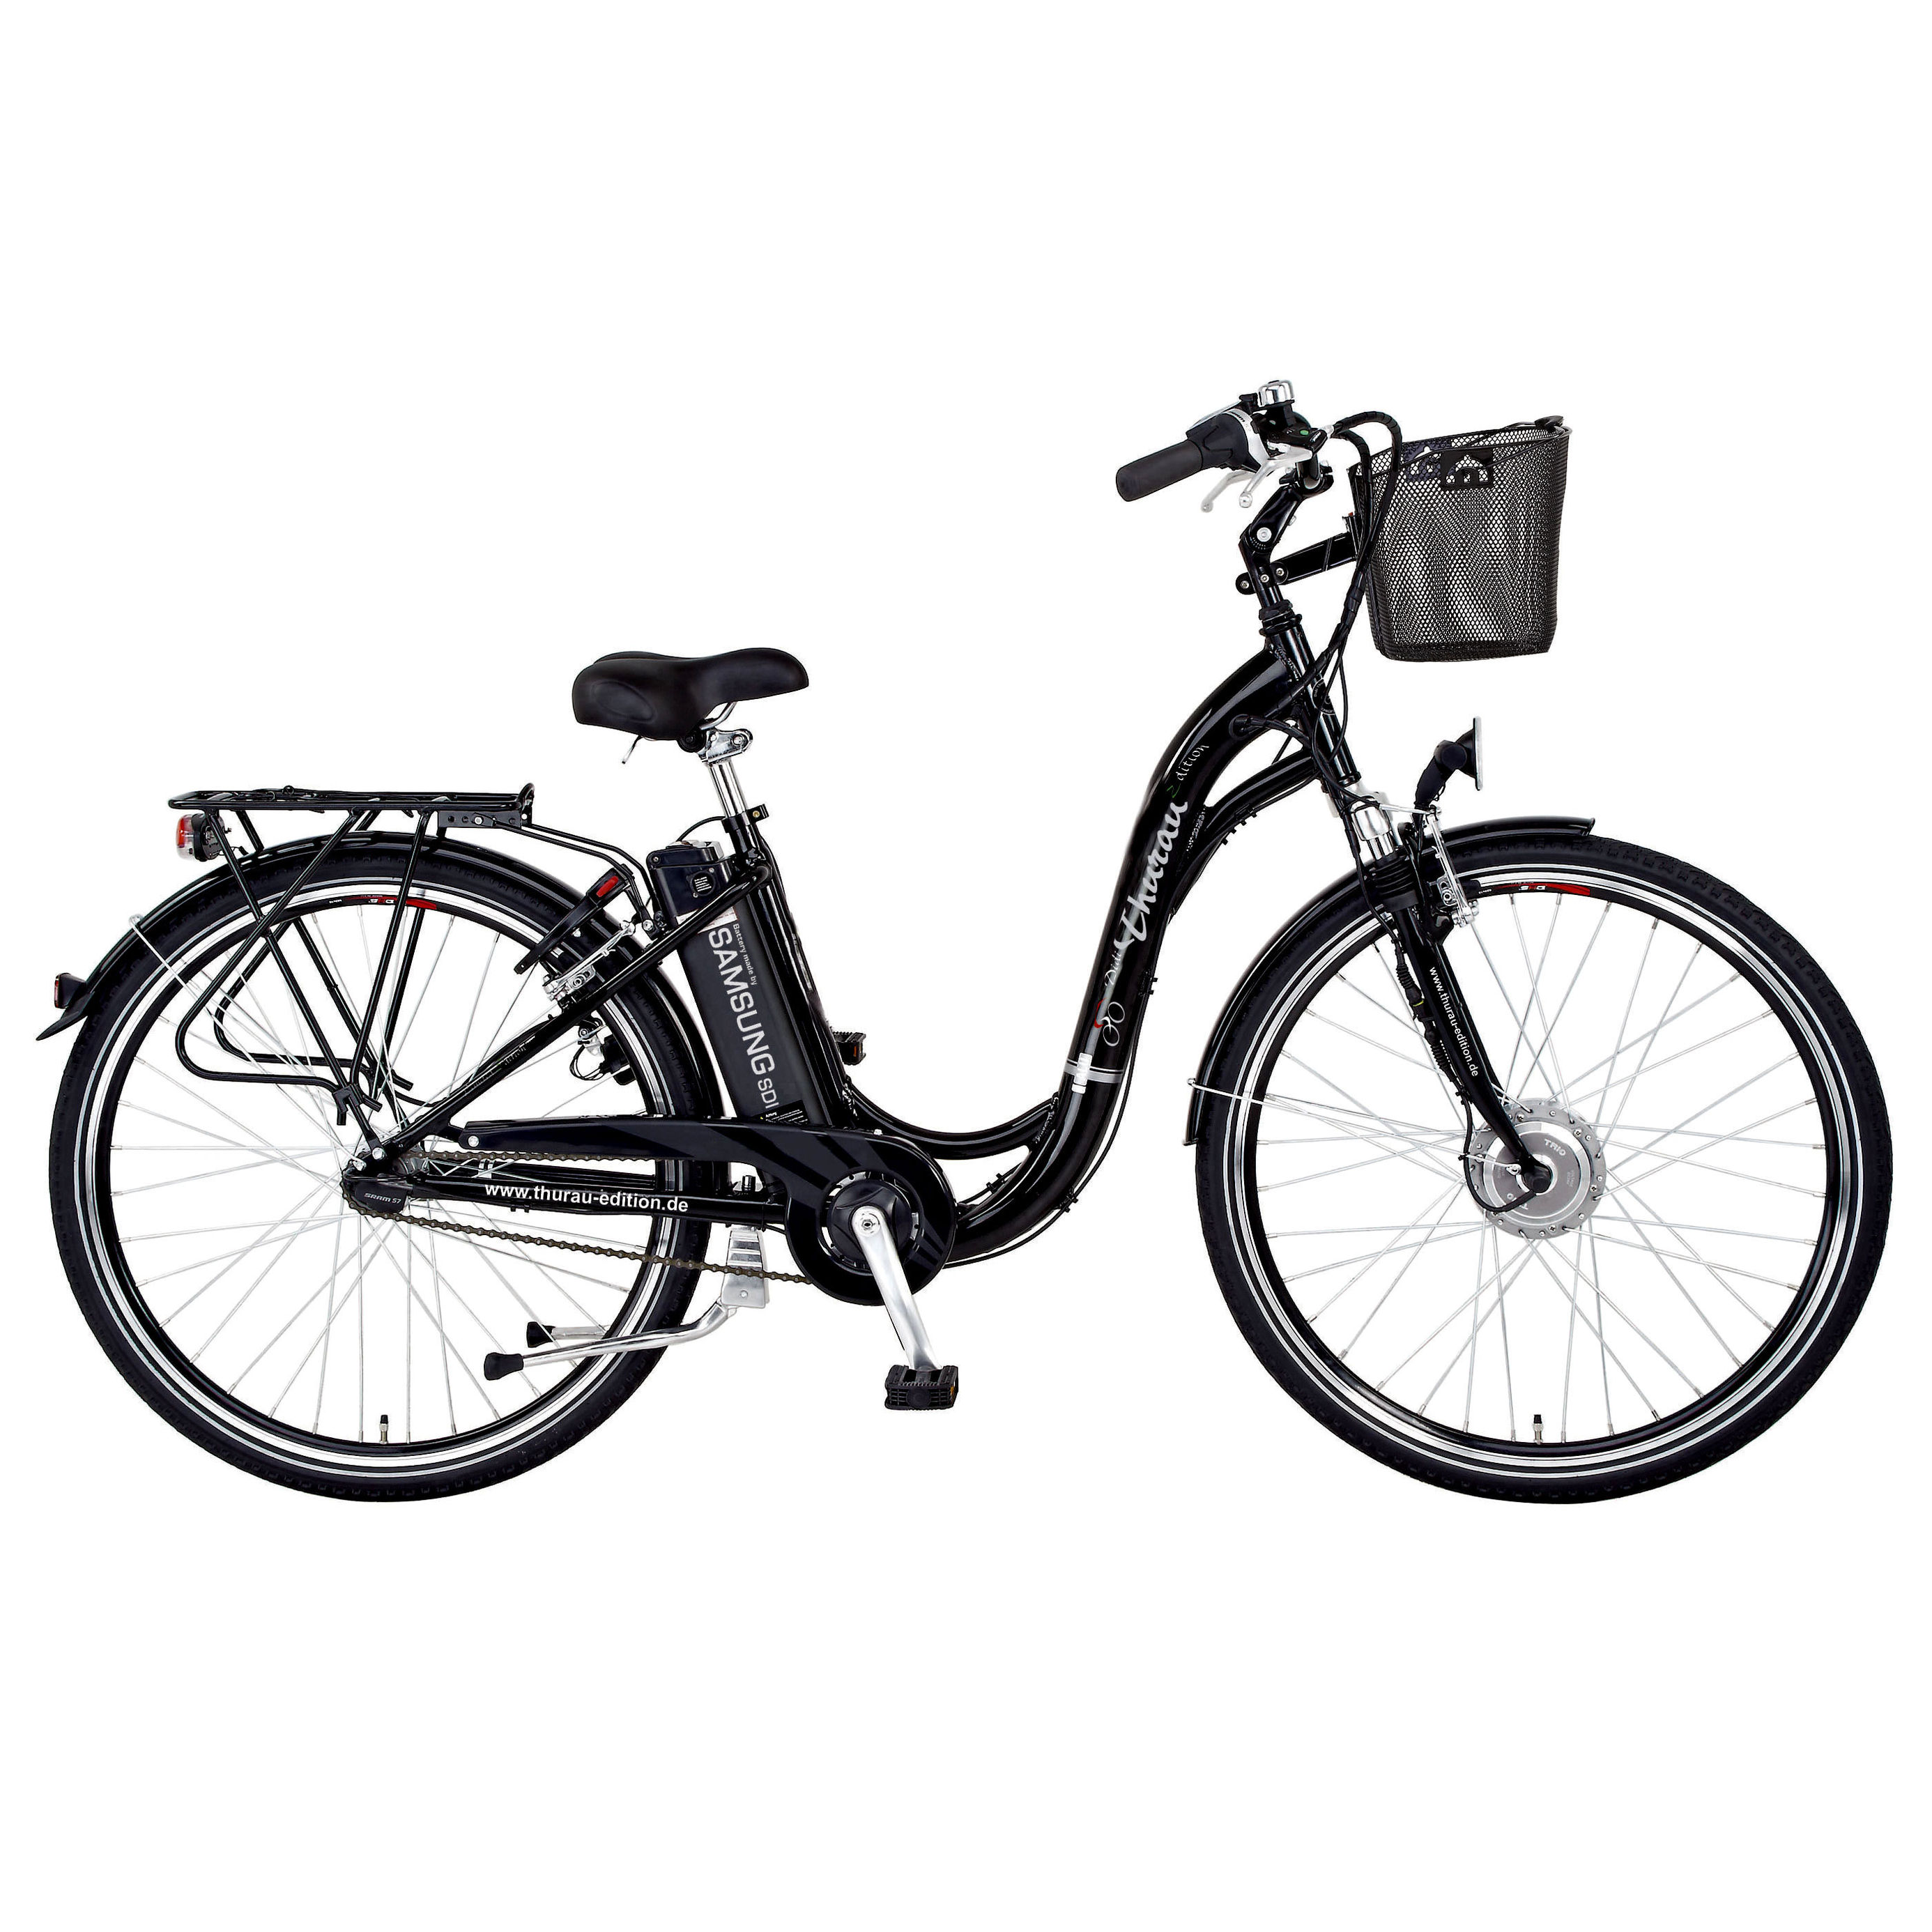 Elektro-Fahrrad Didi Thurau Alu-City Comfort mit Anfahrhilfe | Weltbild.de